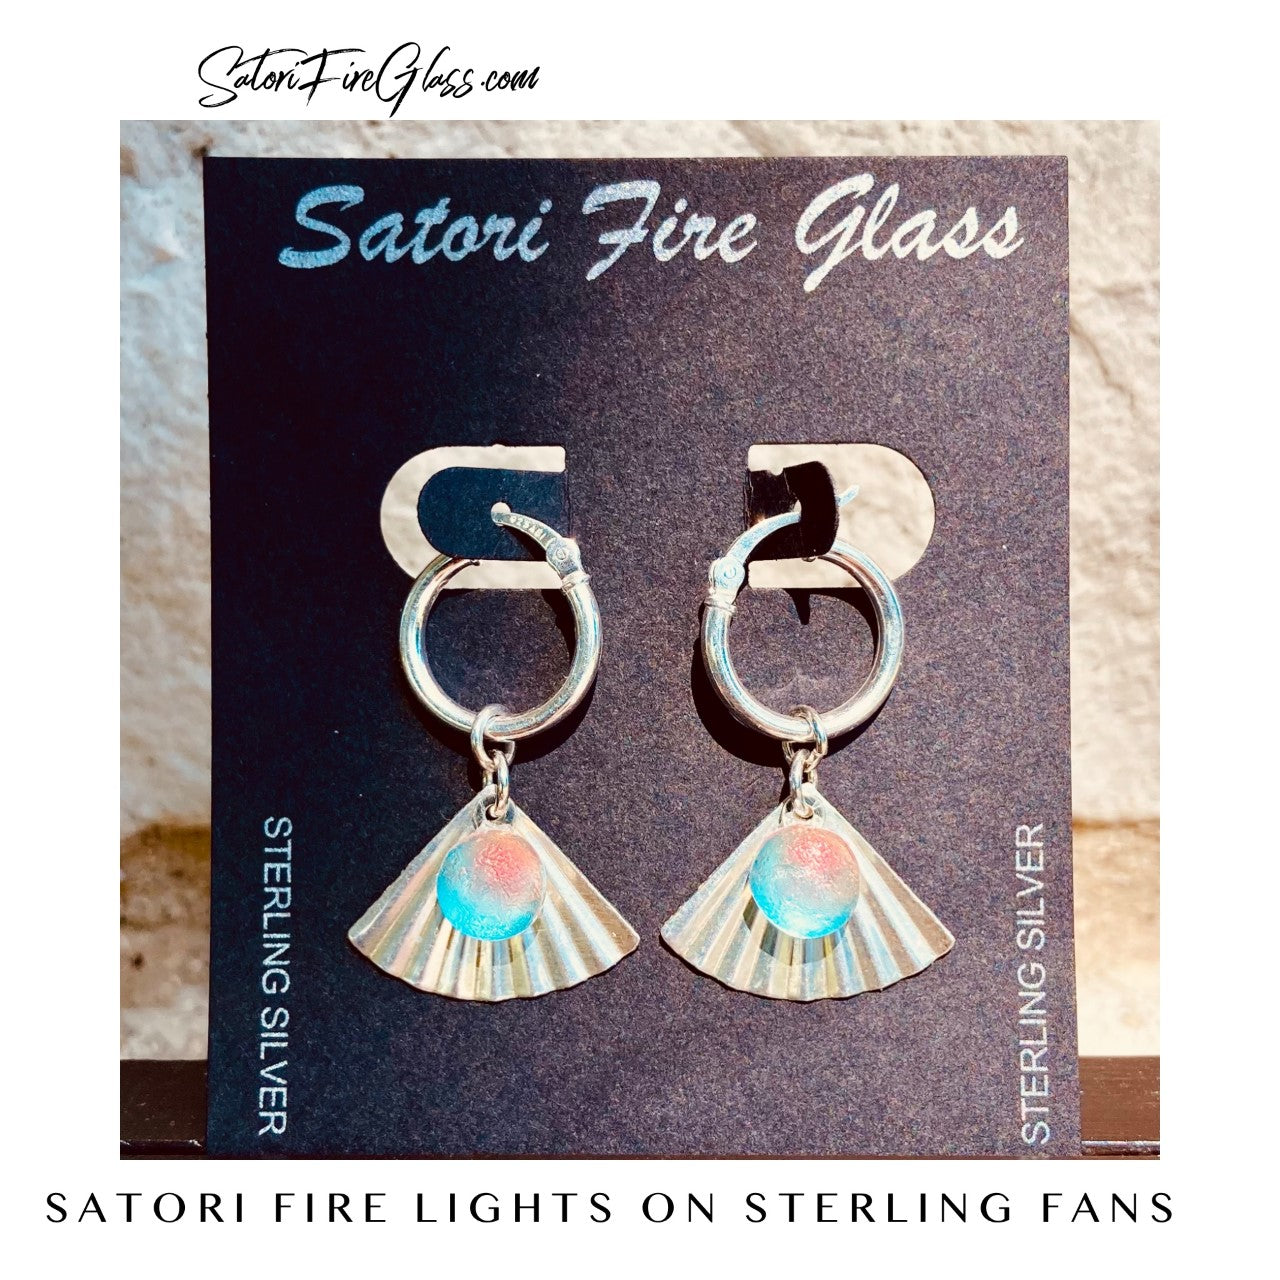 Fire Light Earrings on Sterling Fans